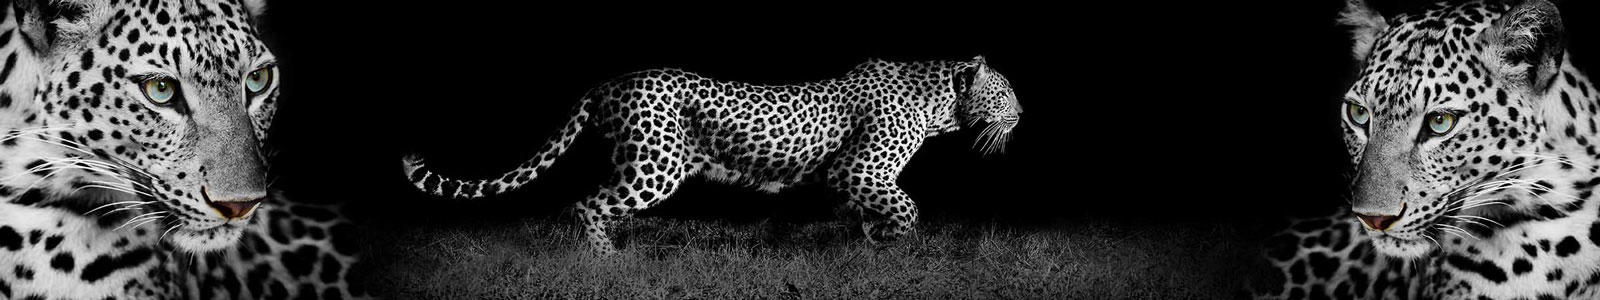 №3206 - Прекрасный леопард на черном